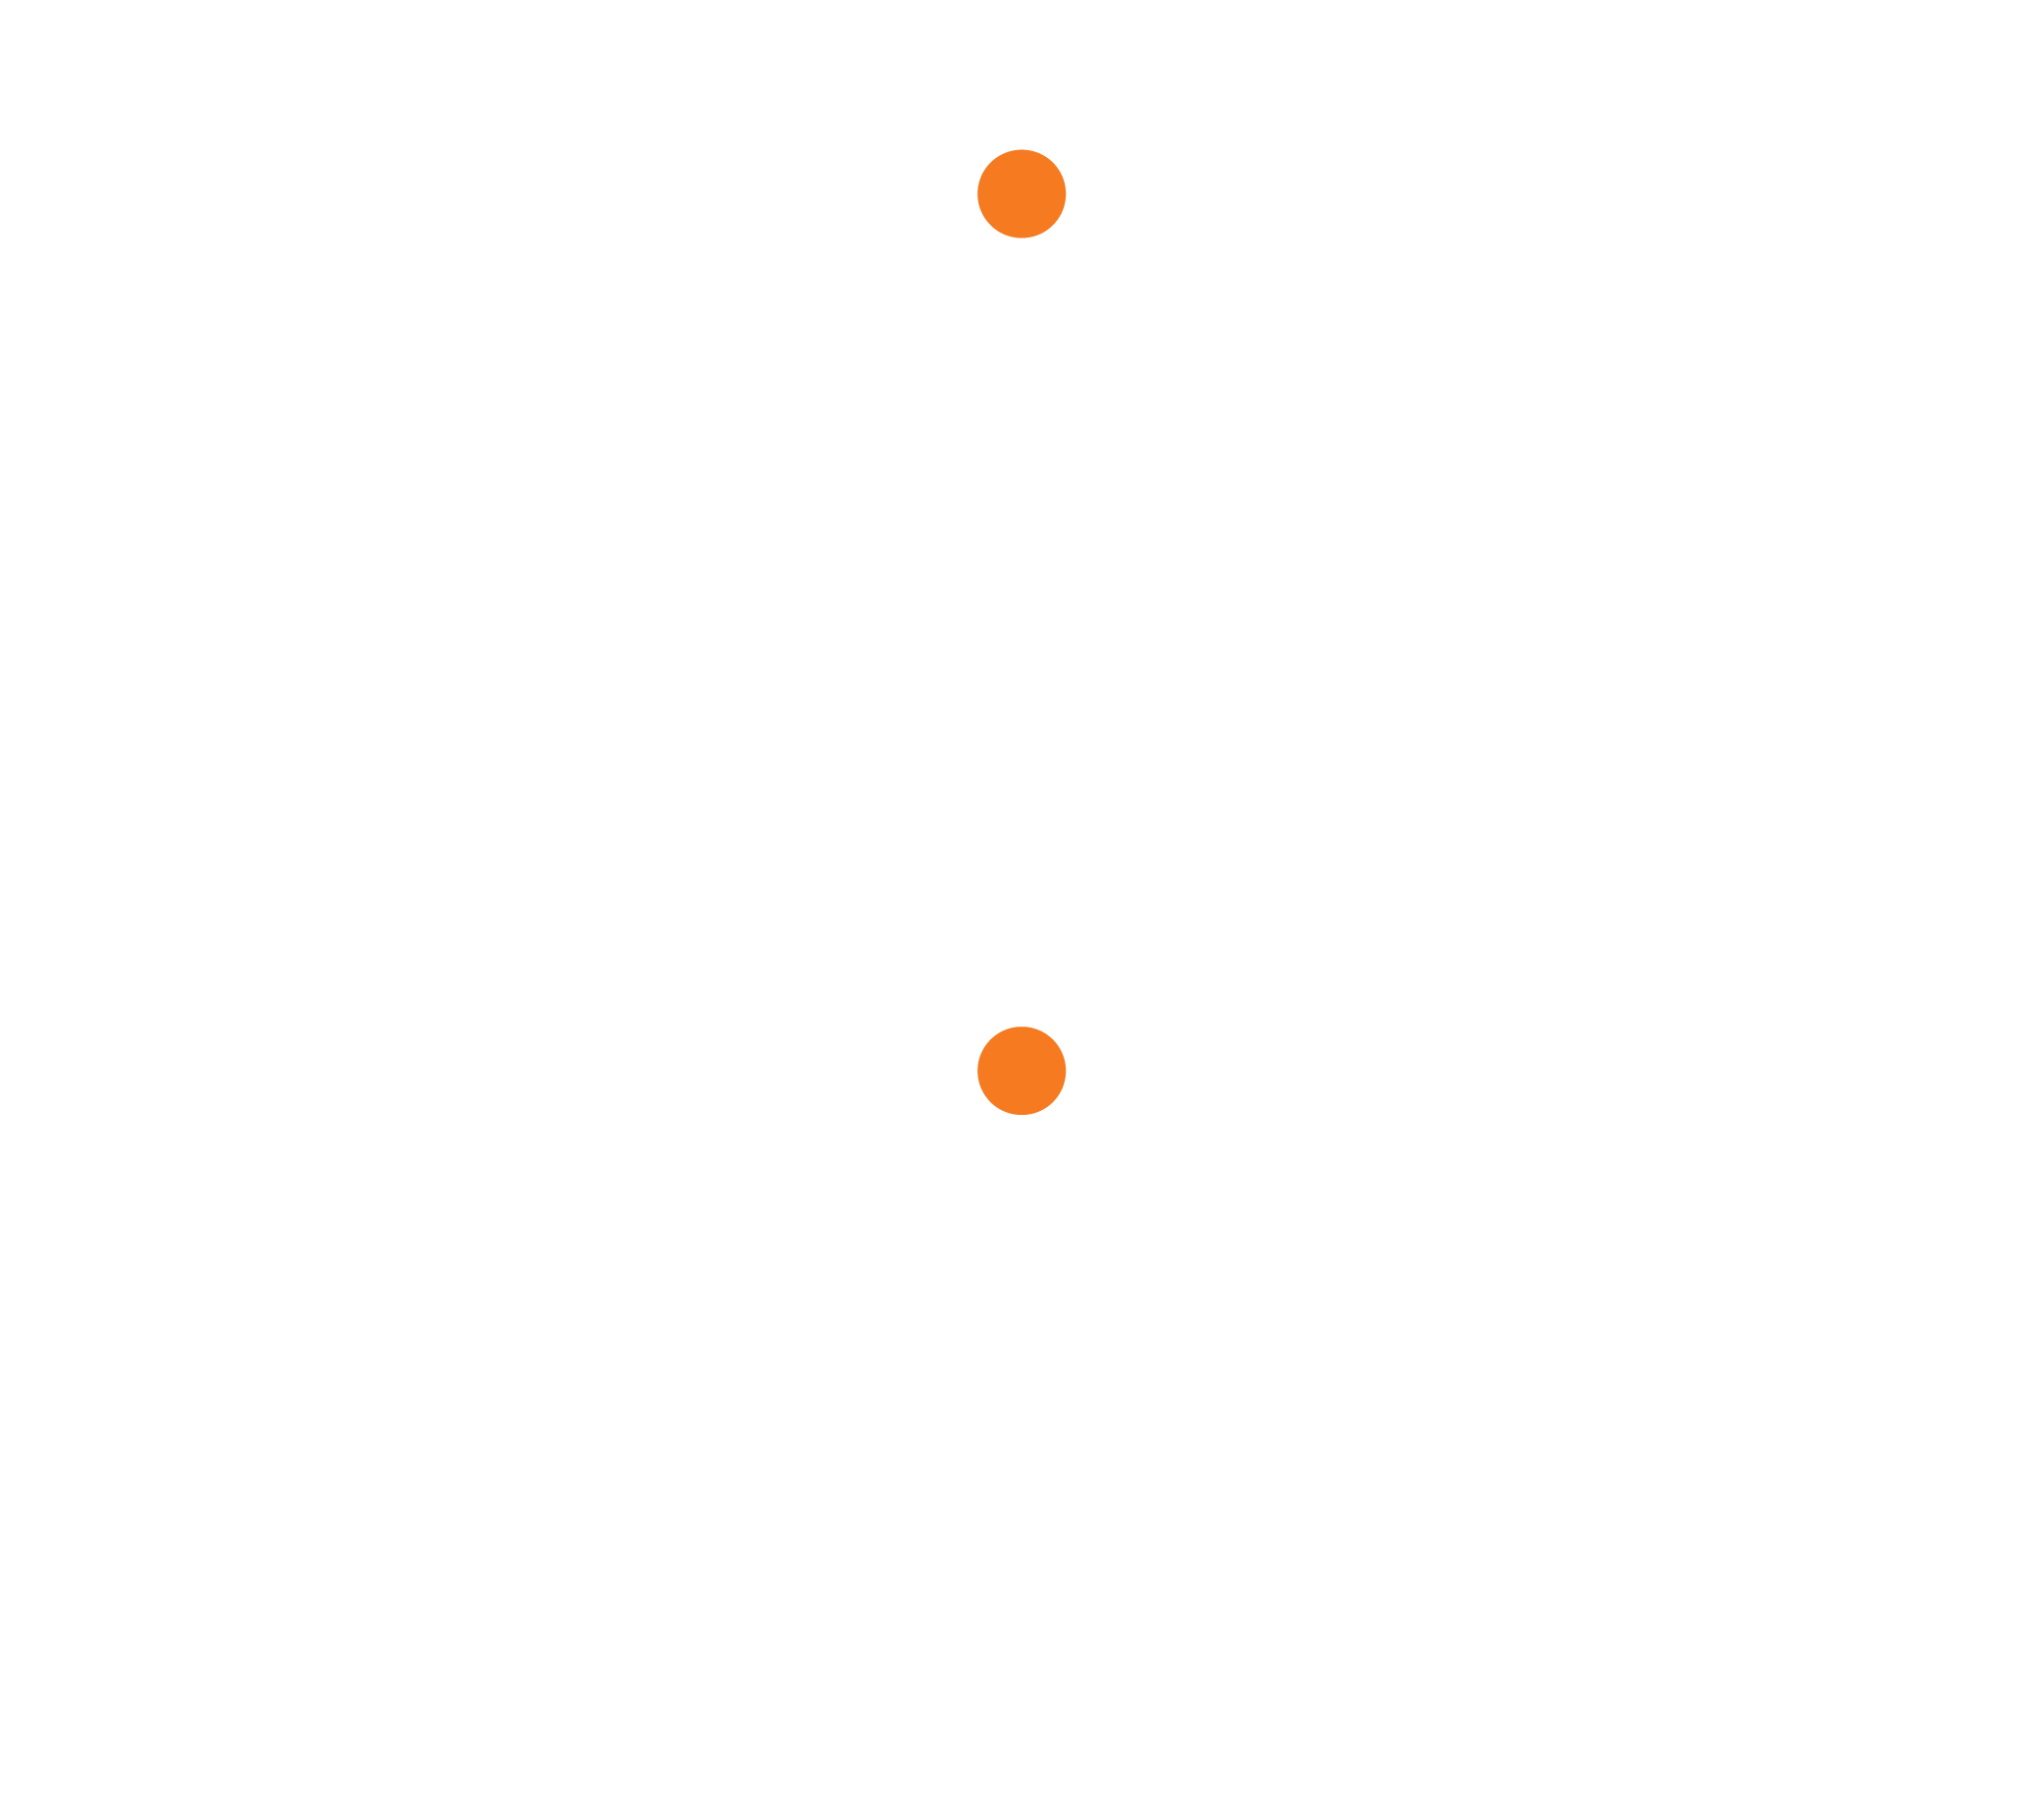 PurkTech<br />
